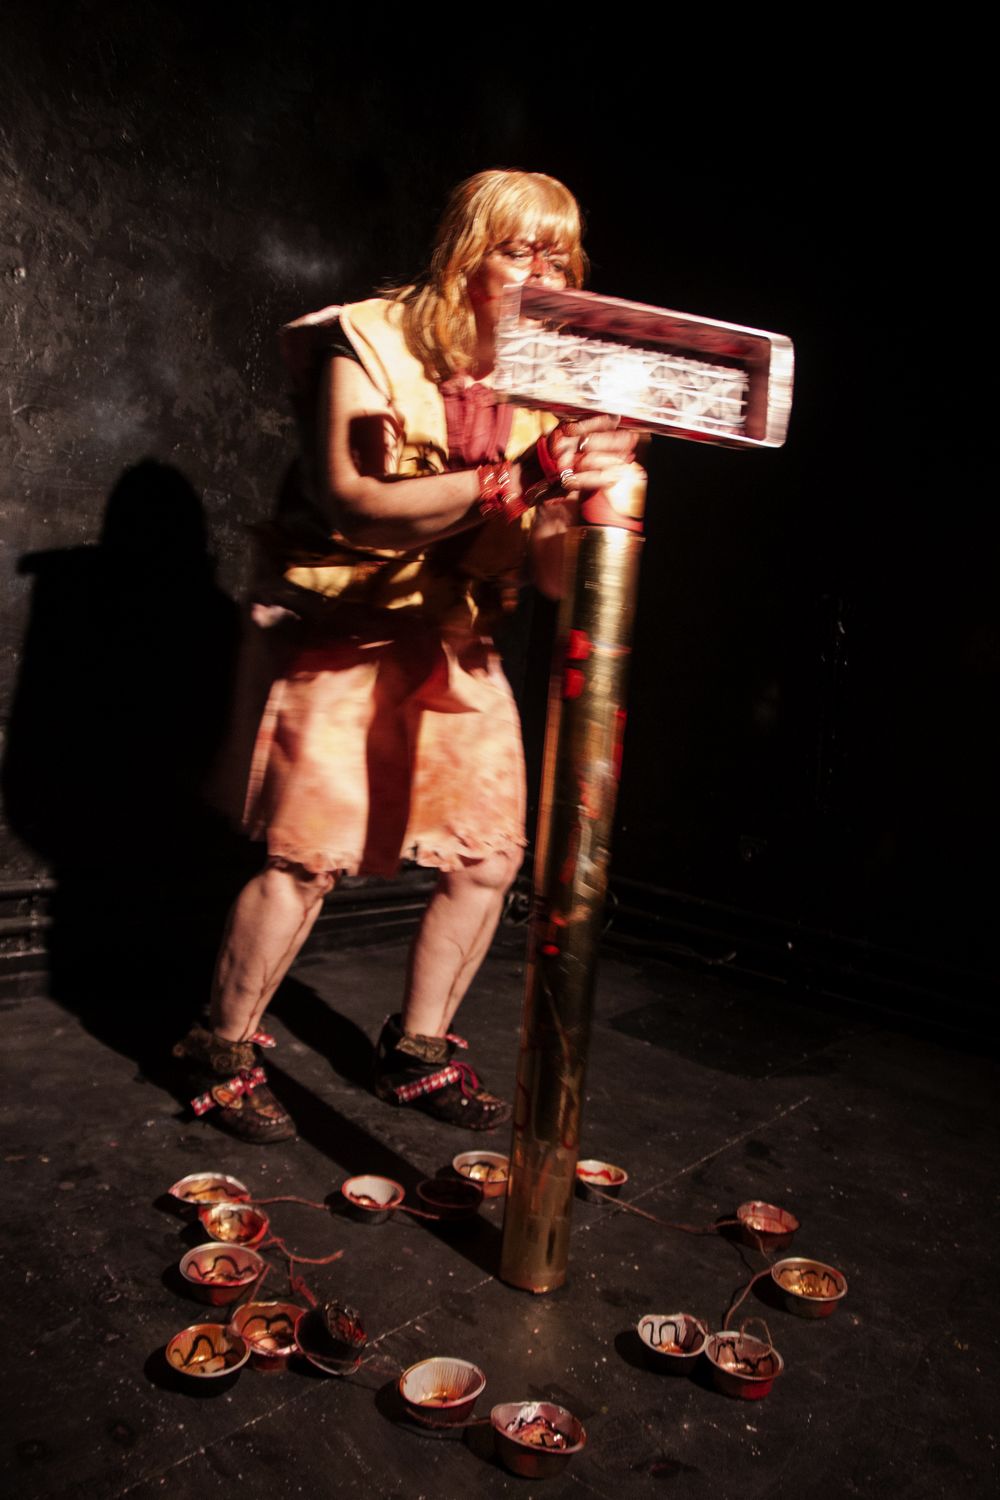 Performance sonore de Nathalie Fiala avec des objets et dans un costume qu'elle a réalisés.